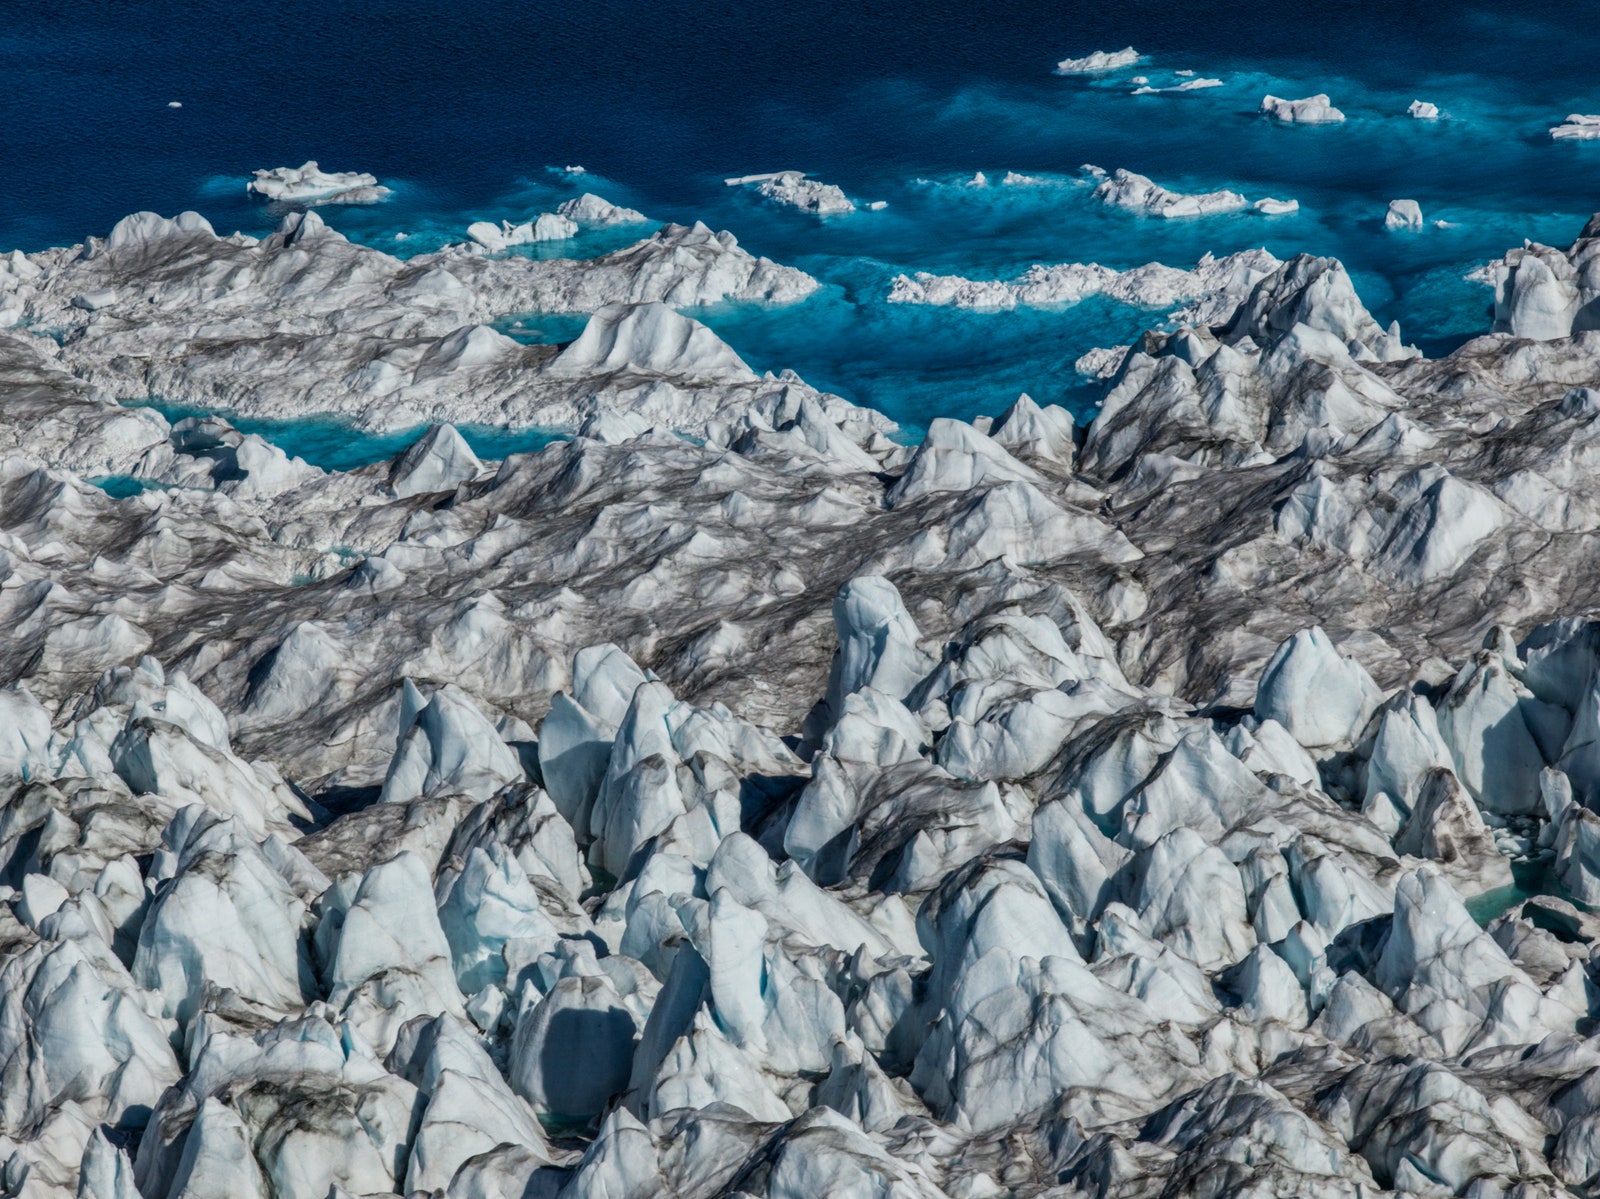 Диана Тафт. Морской пейзаж гренландский ледяной щит. Из проекта “Таяние Арктики” 2016. Пигментная печать © Диана Тафт